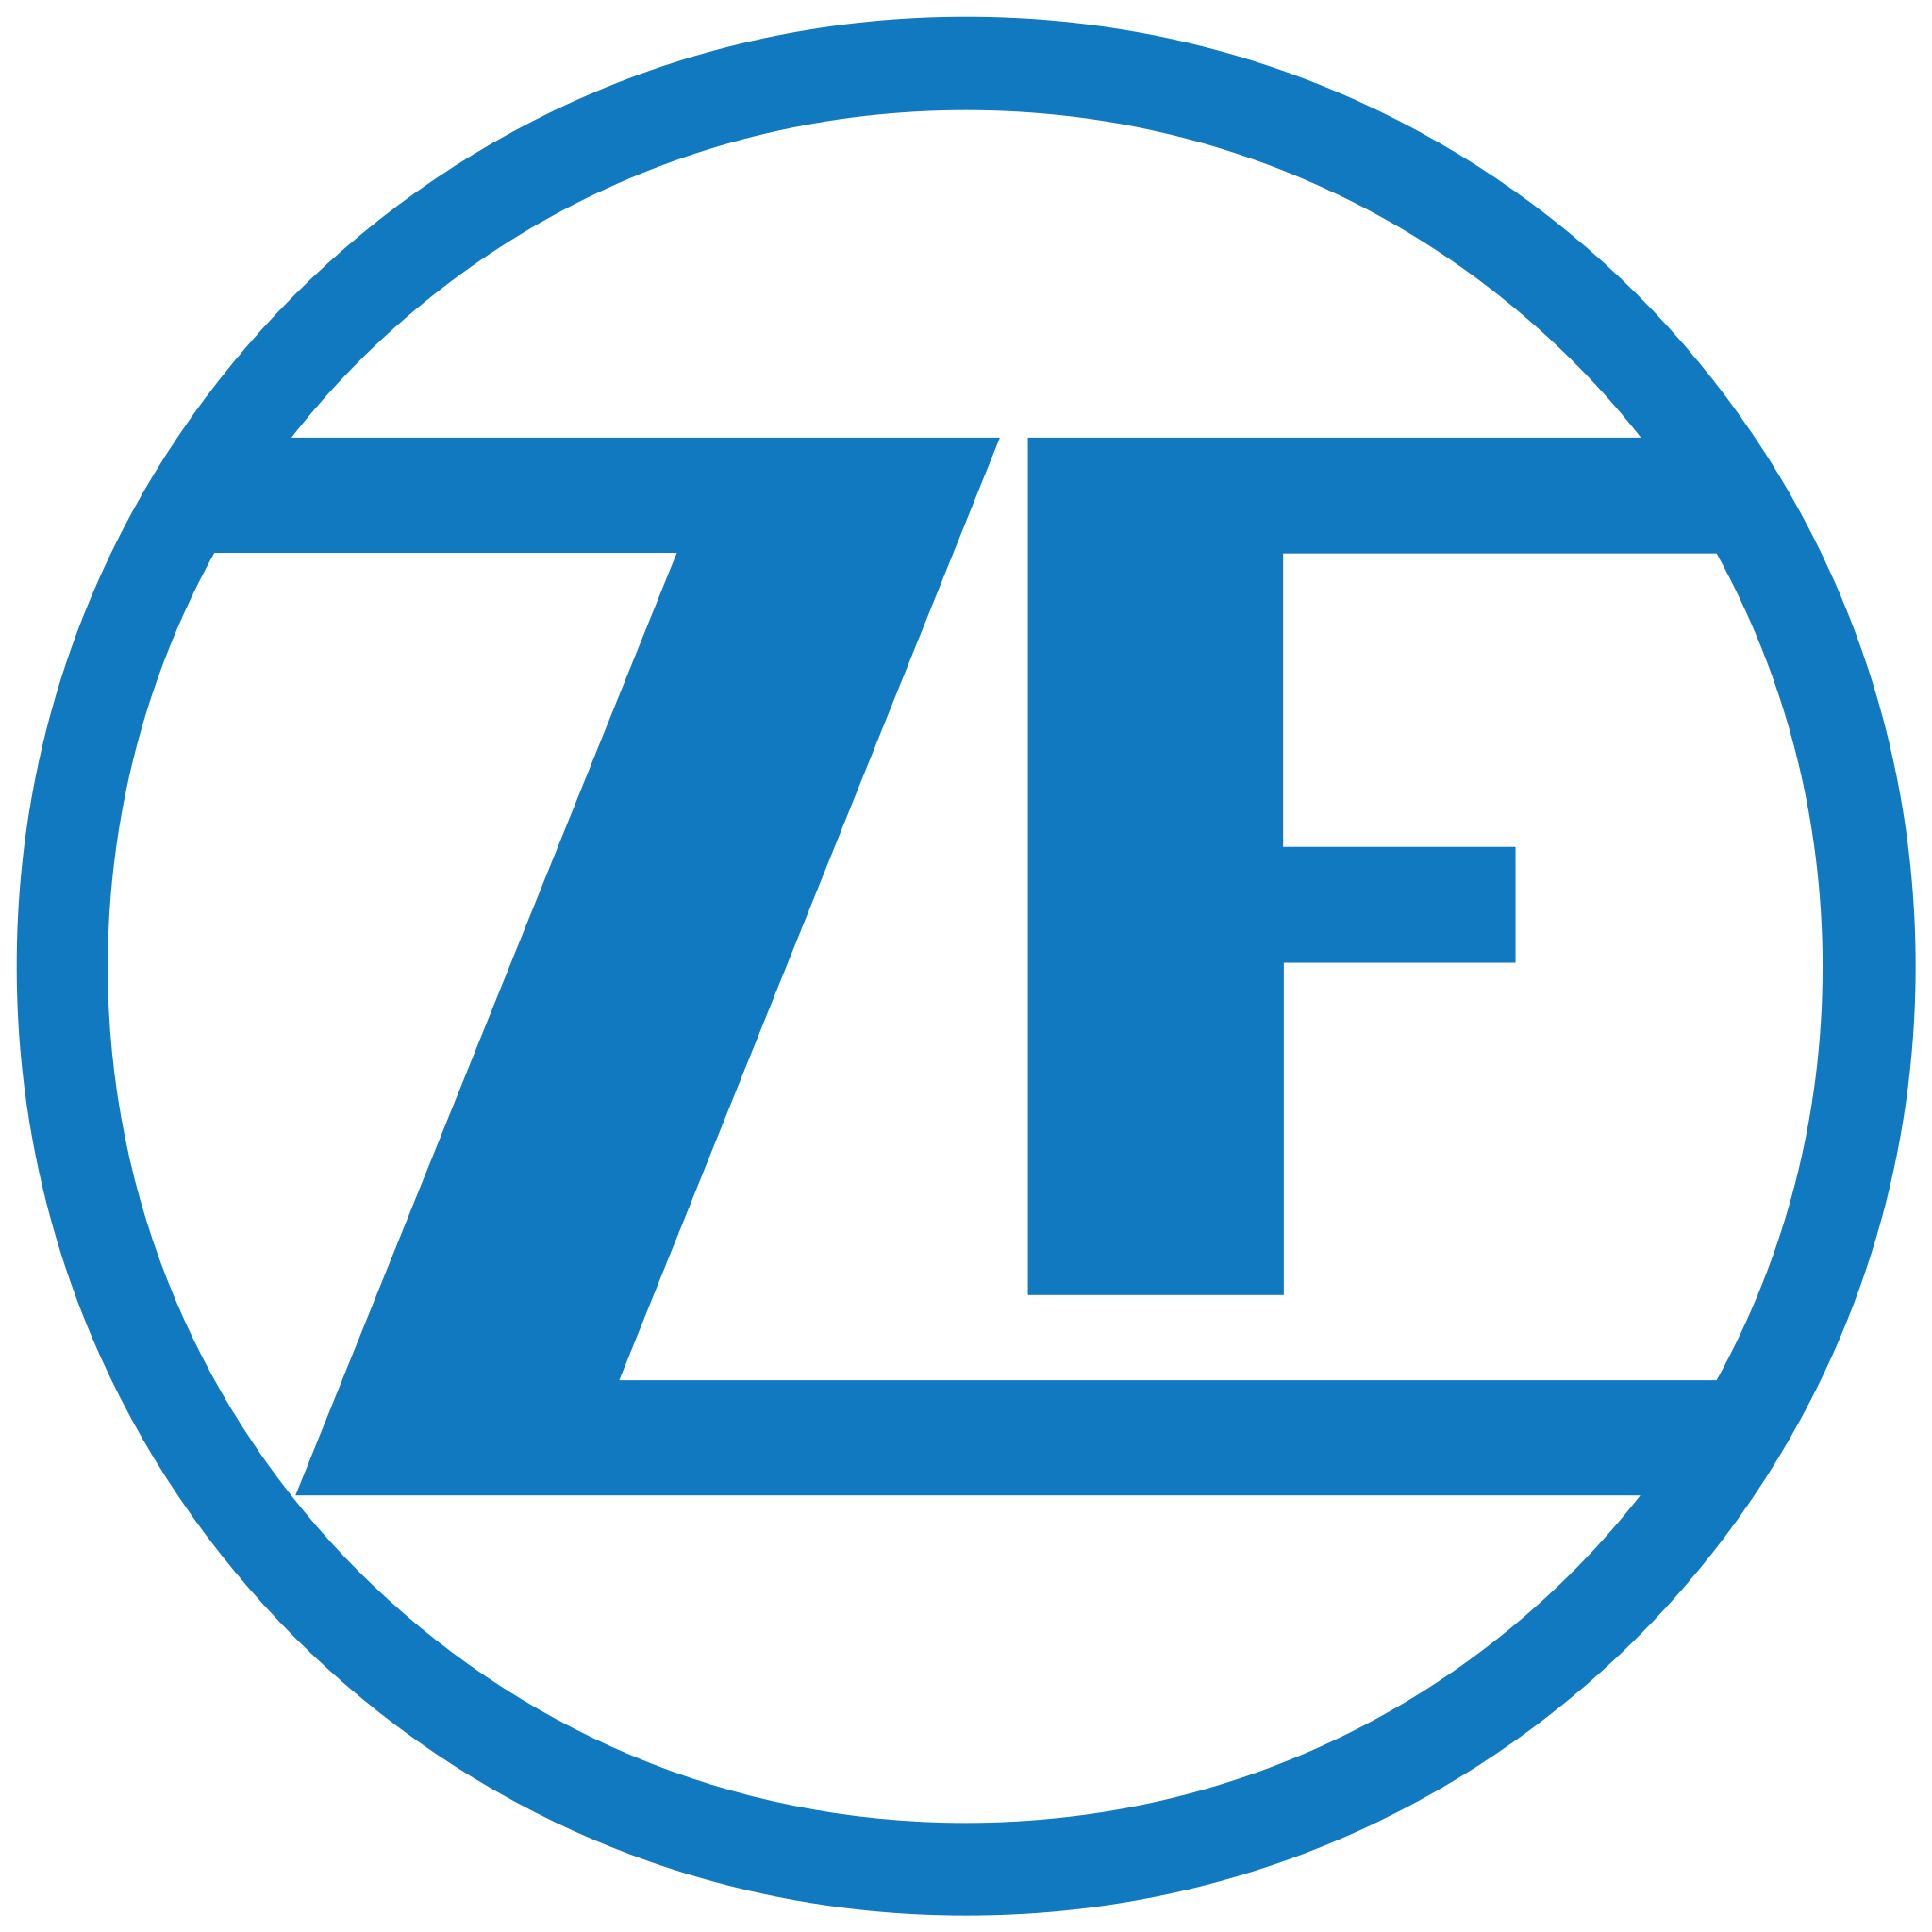 زد اف - ZF